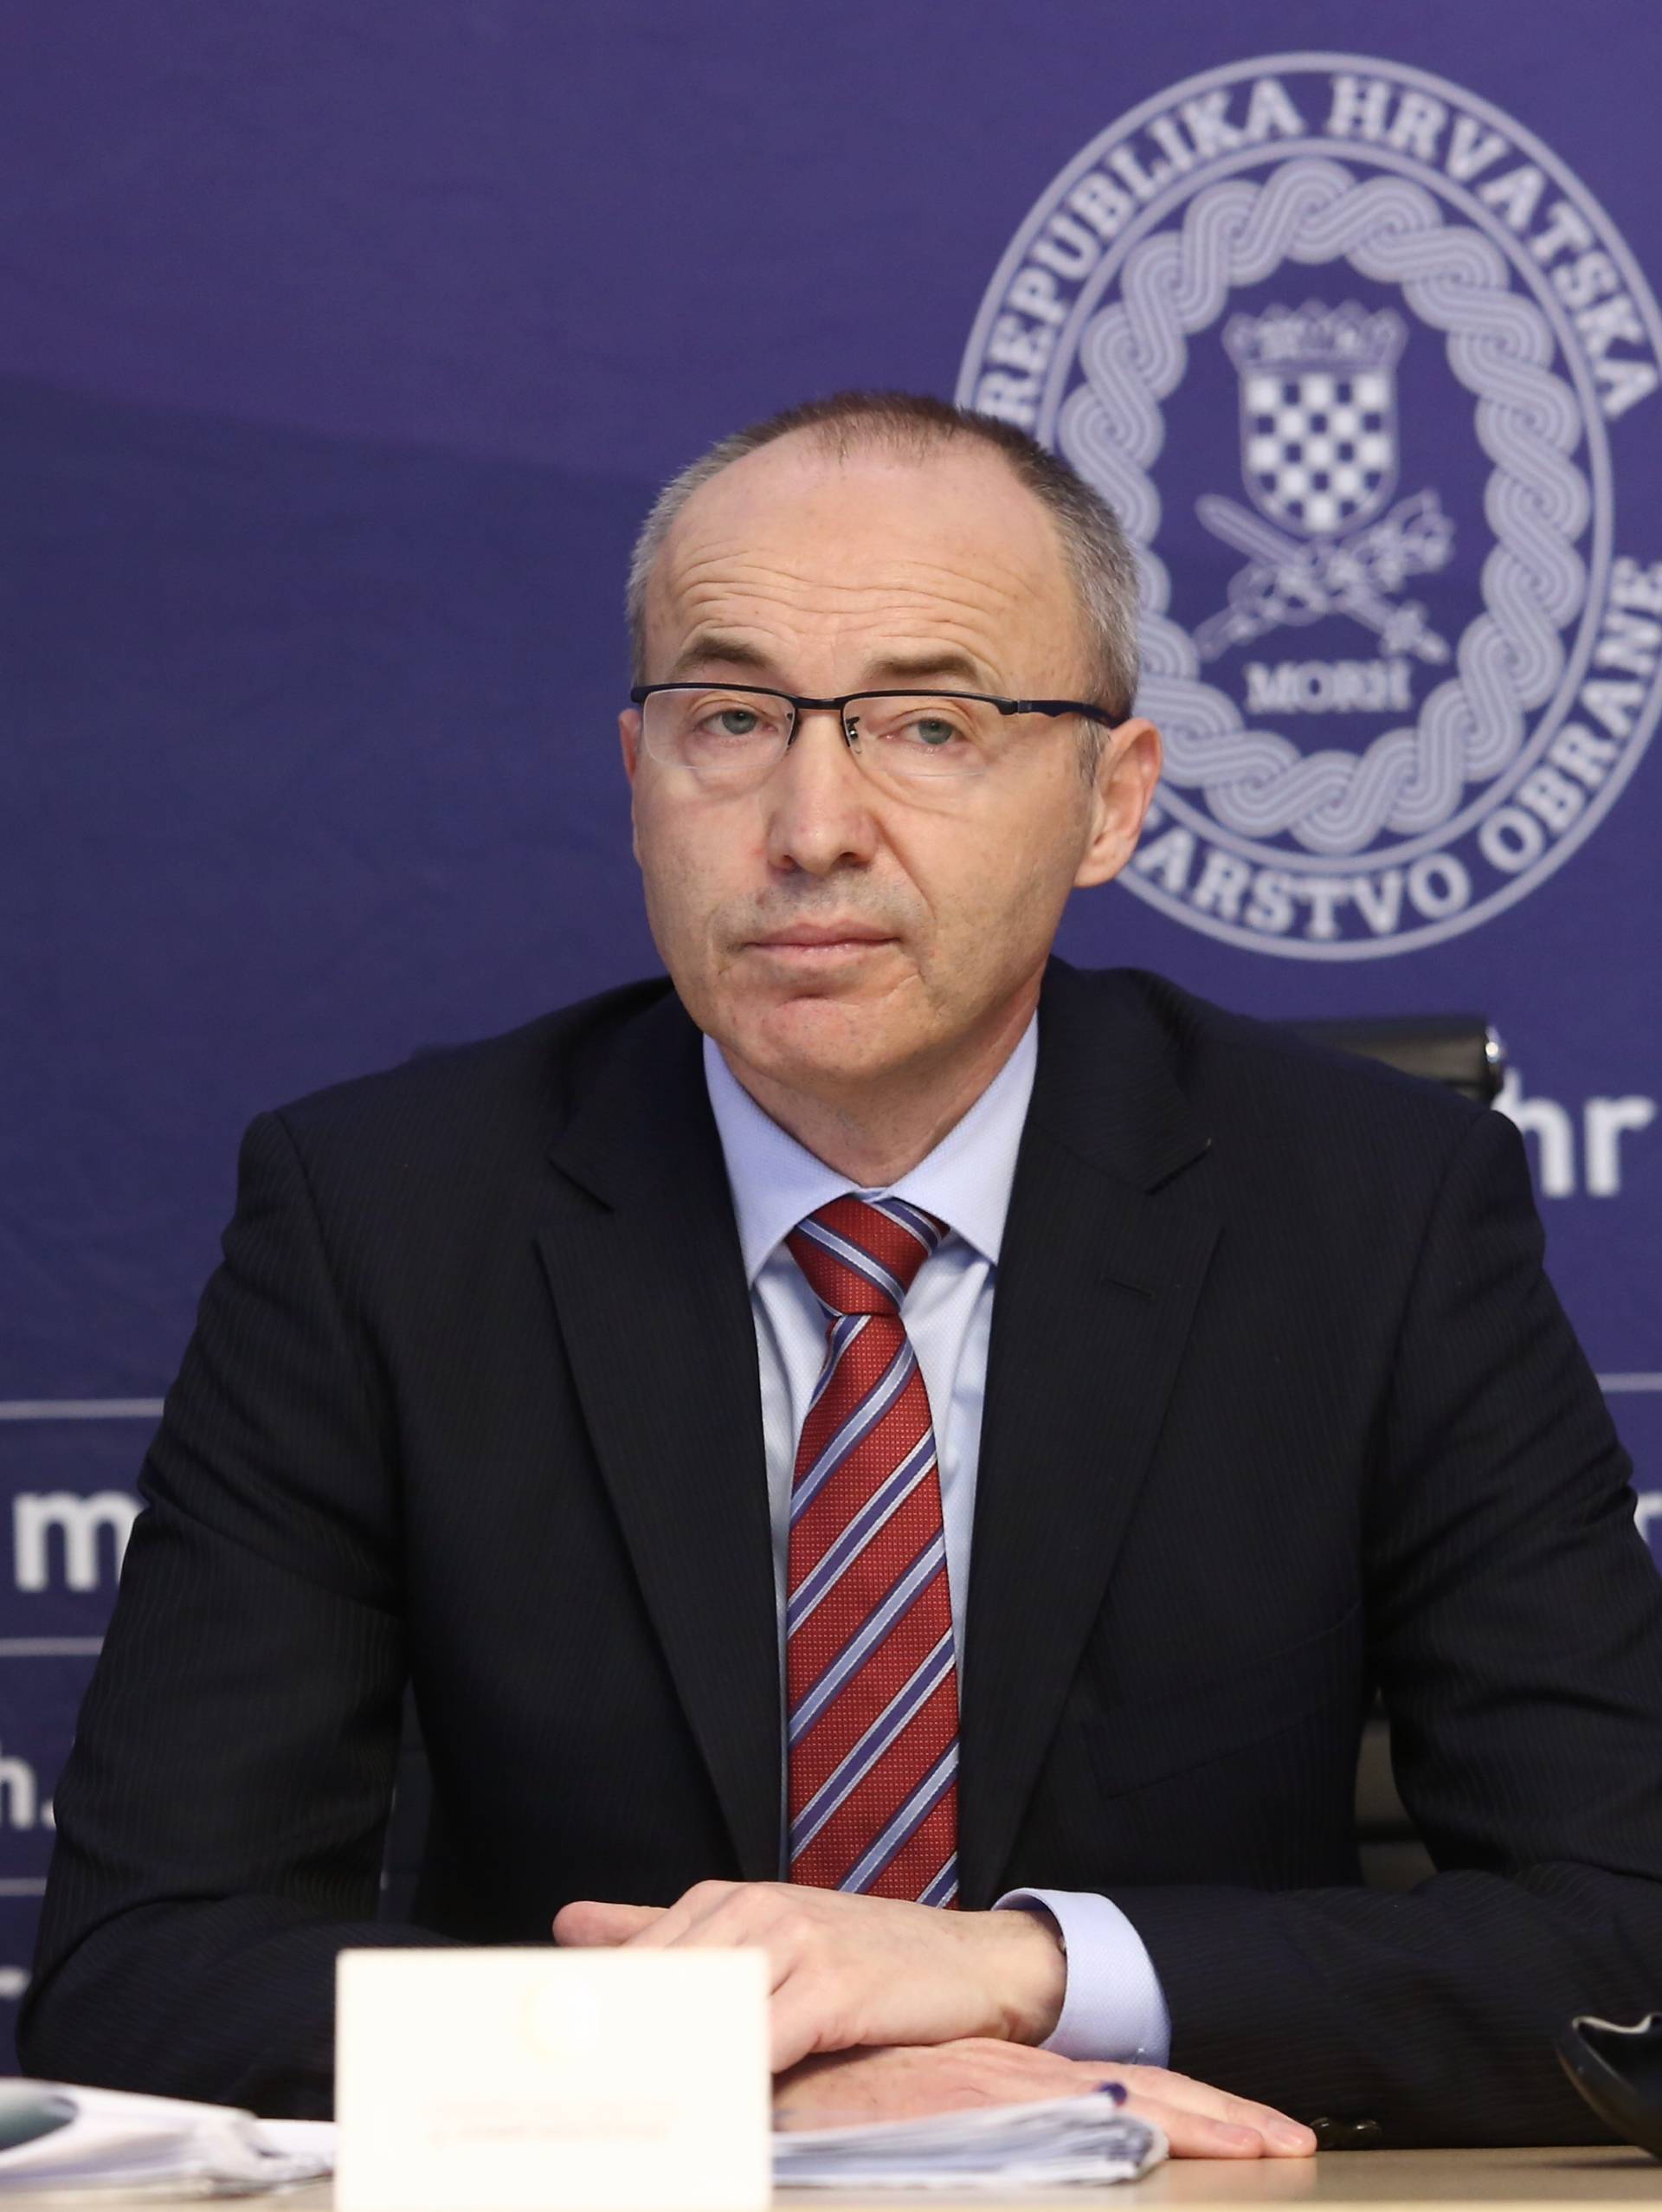 Ministar Krstičević predstavio vojne prioritete za ovu godinu